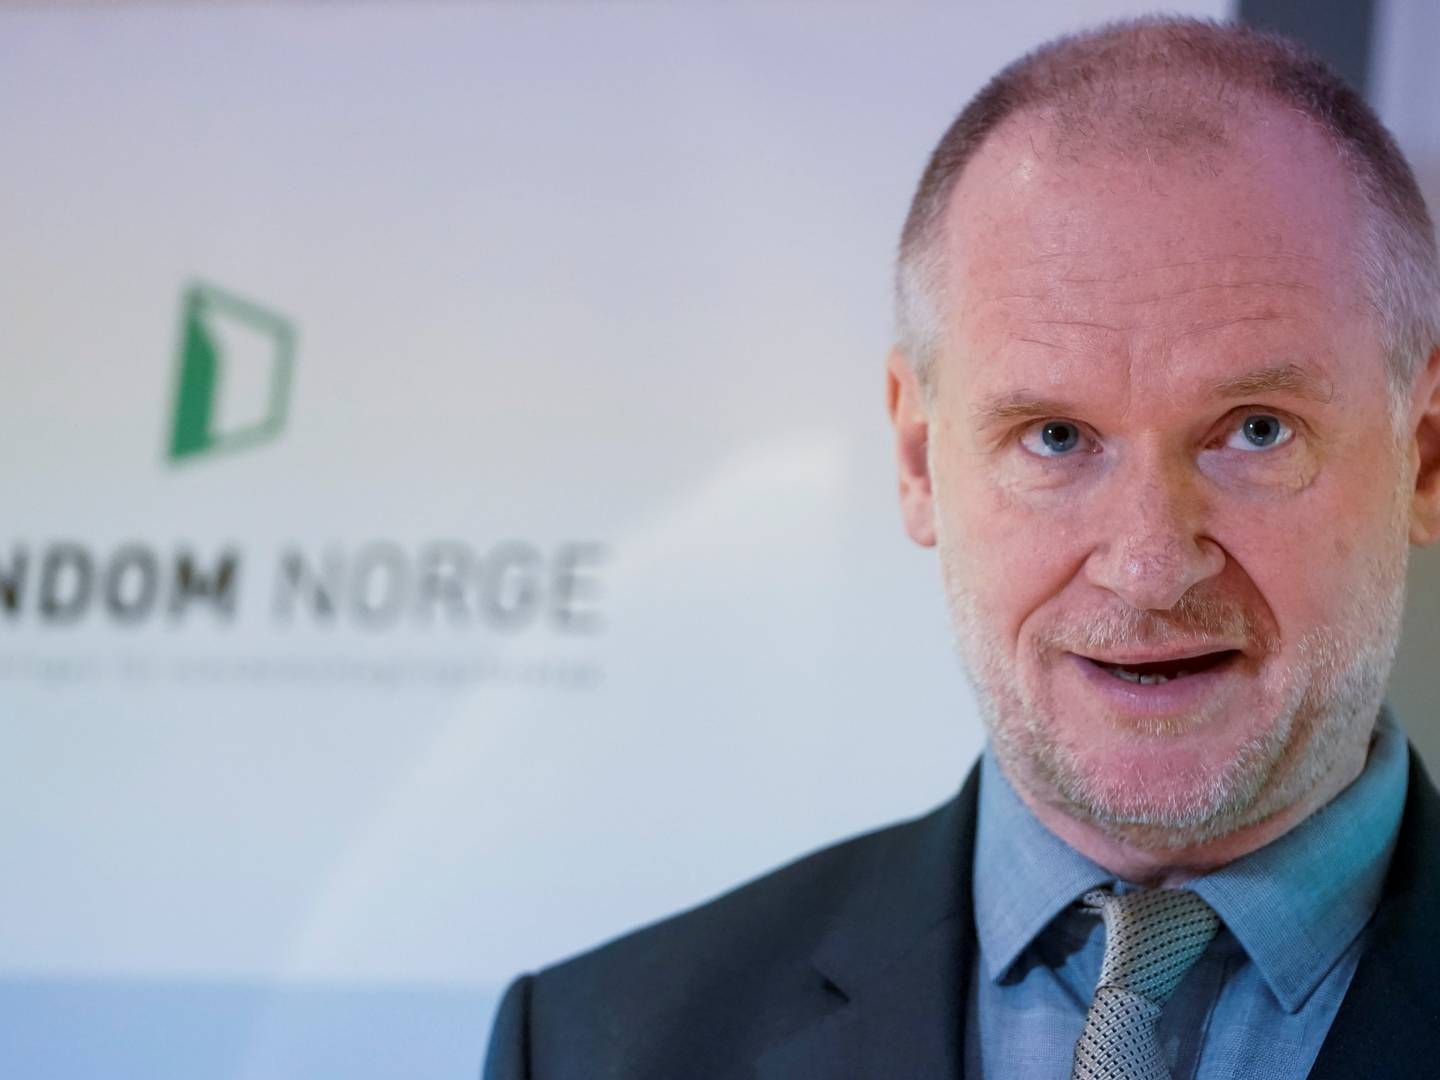 ØKT SALG I MAI: Det ble solgt over 10.000 boliger i Norge i mai, rapporterer administrerende direktør Henning Lauridsen i Eiendom Norge. | Foto: Terje Pedersen, NTB